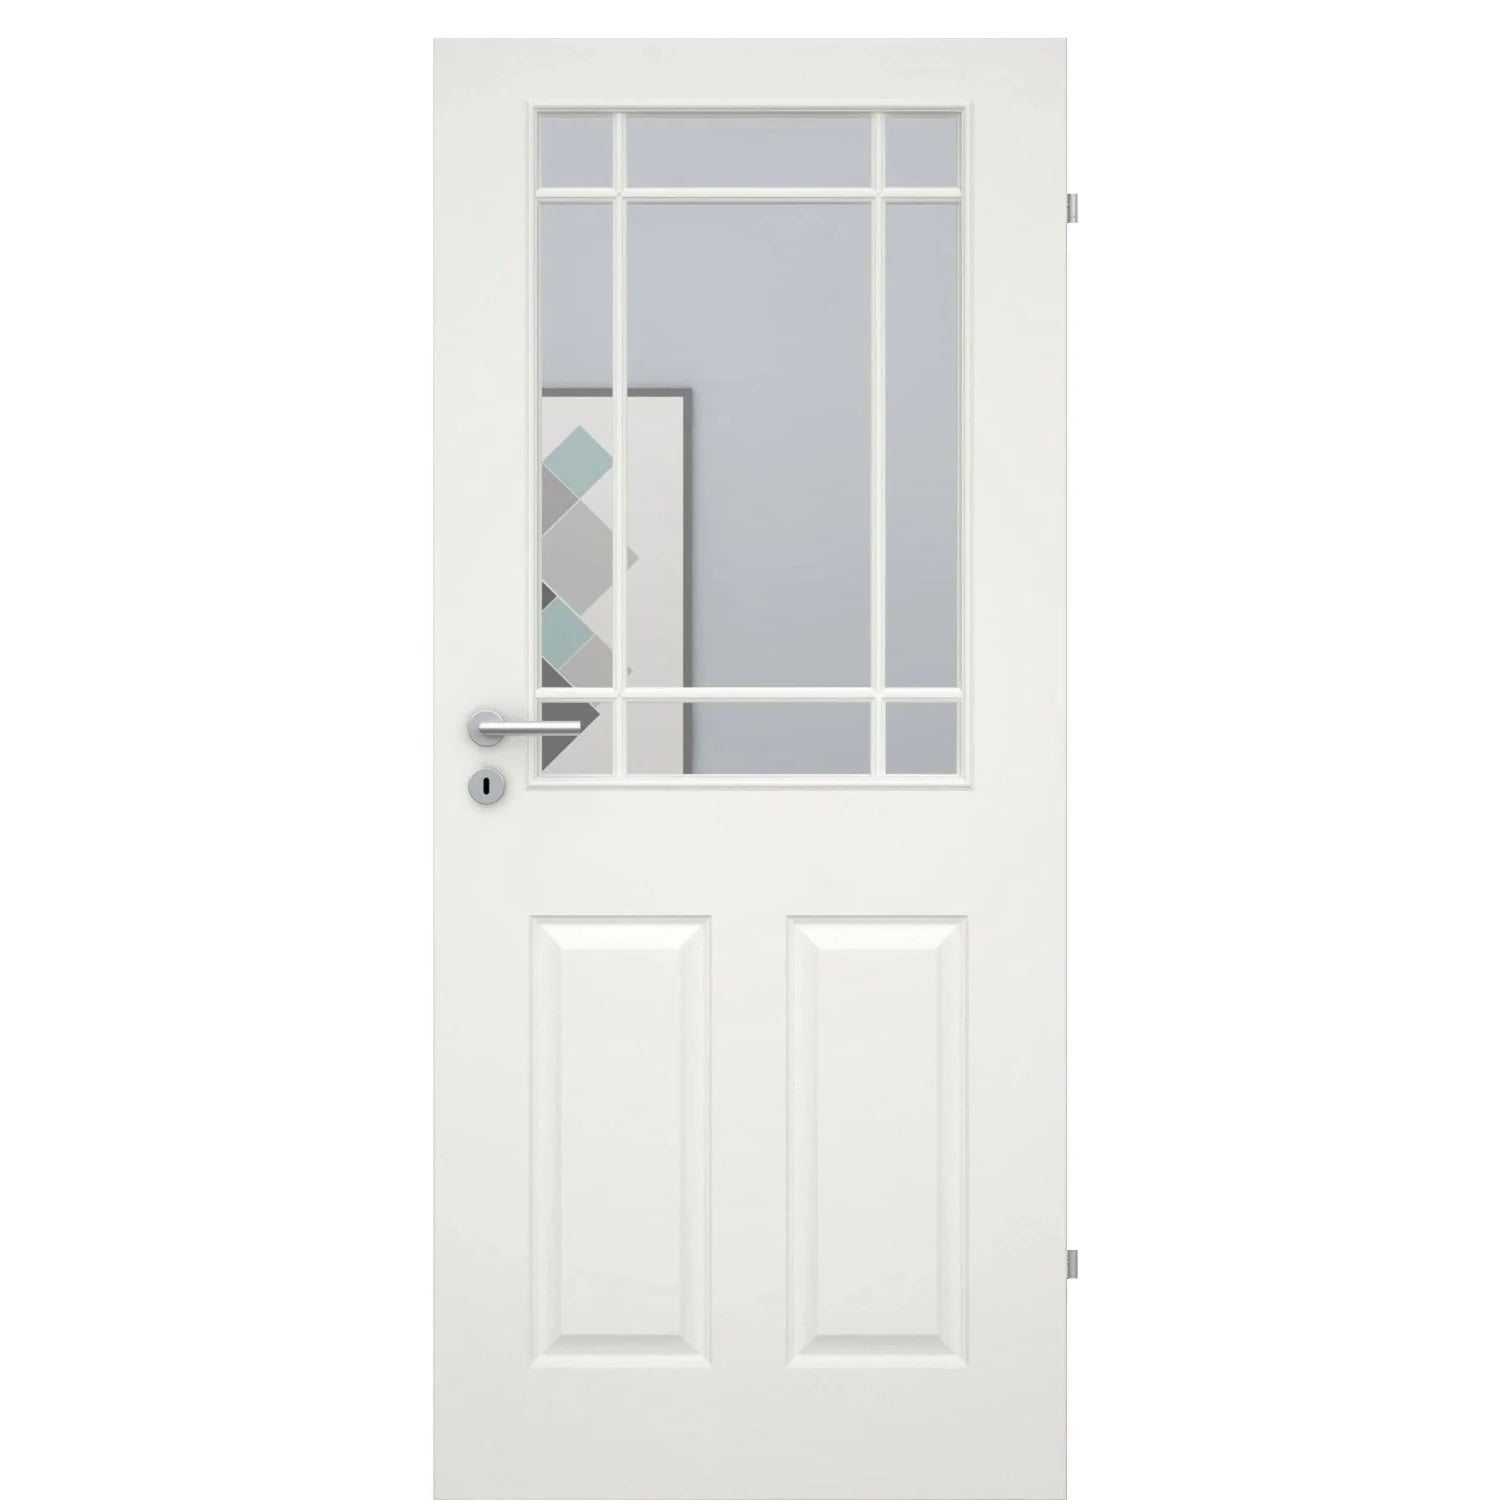 Zimmertür mit Lichtausschnitt mit Sprossenrahmen klassisch soft-weiß 4 Kassetten Rundkante - Modell Stiltür K41LASPK